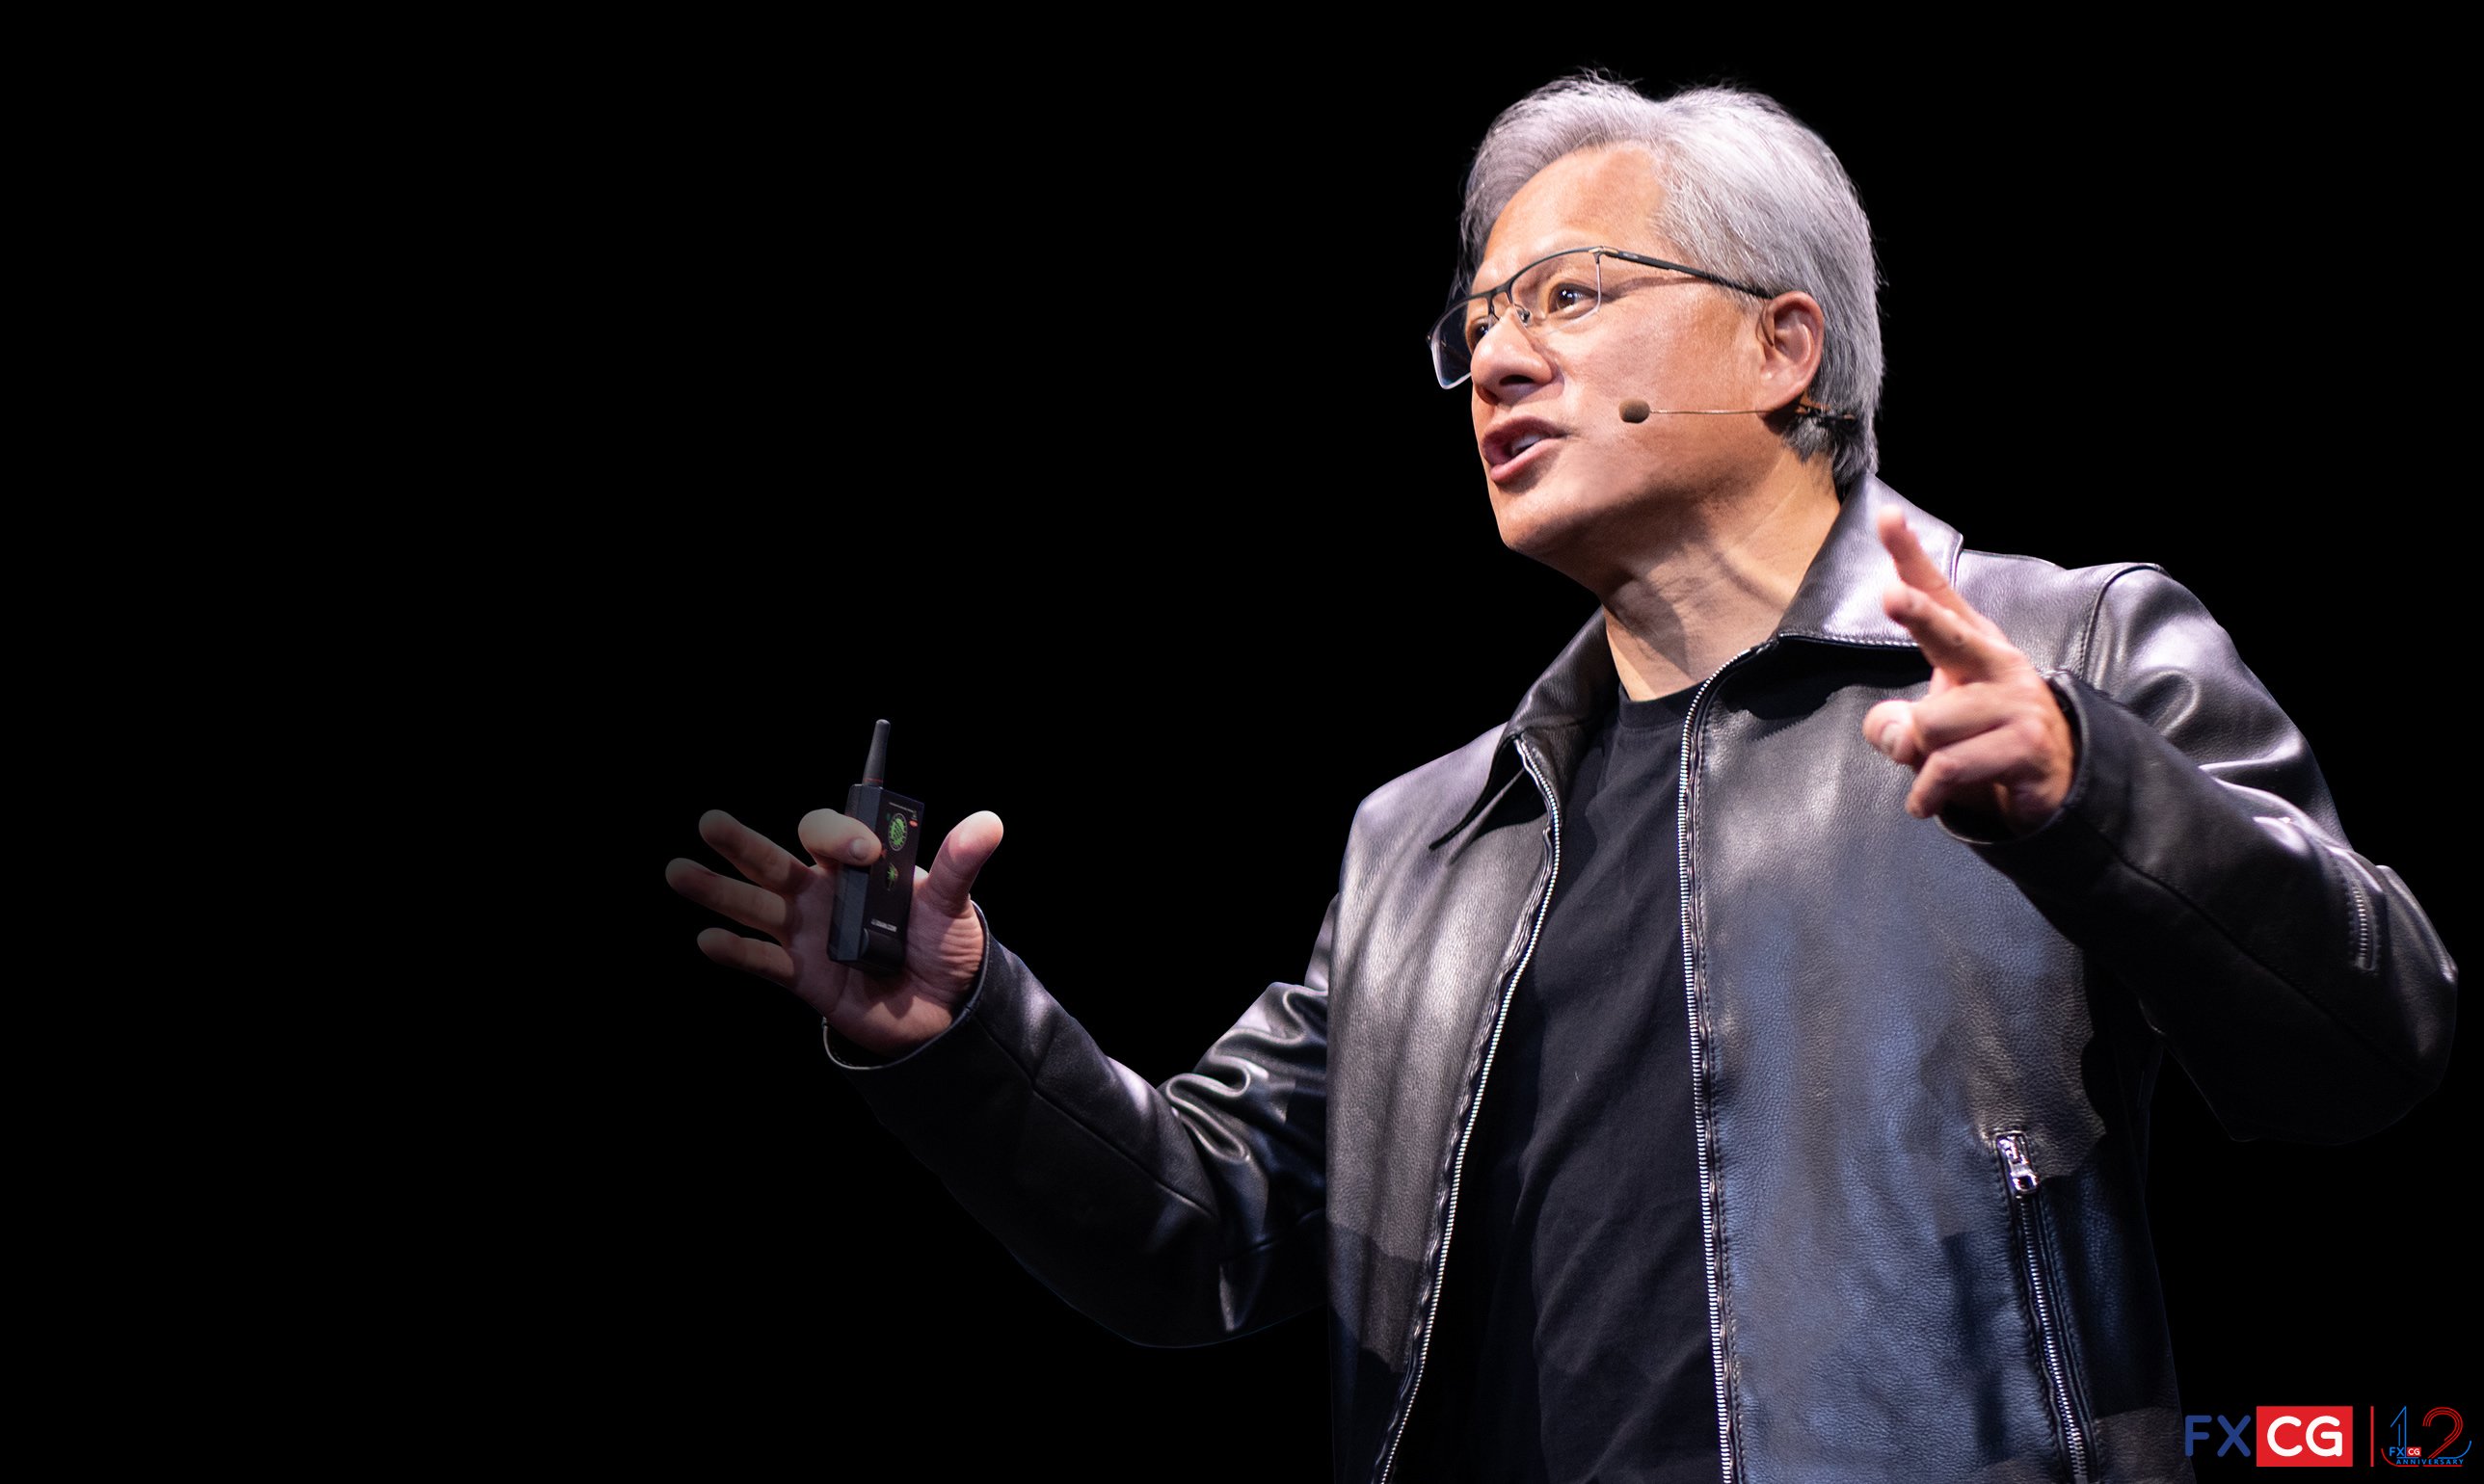 เปิดตัวชิปใหม่ของ Nvidia! Jensen Huang: "นี่คือกลไกของการปฏิวัติอุตสาหกรรมครั้งใหม่"